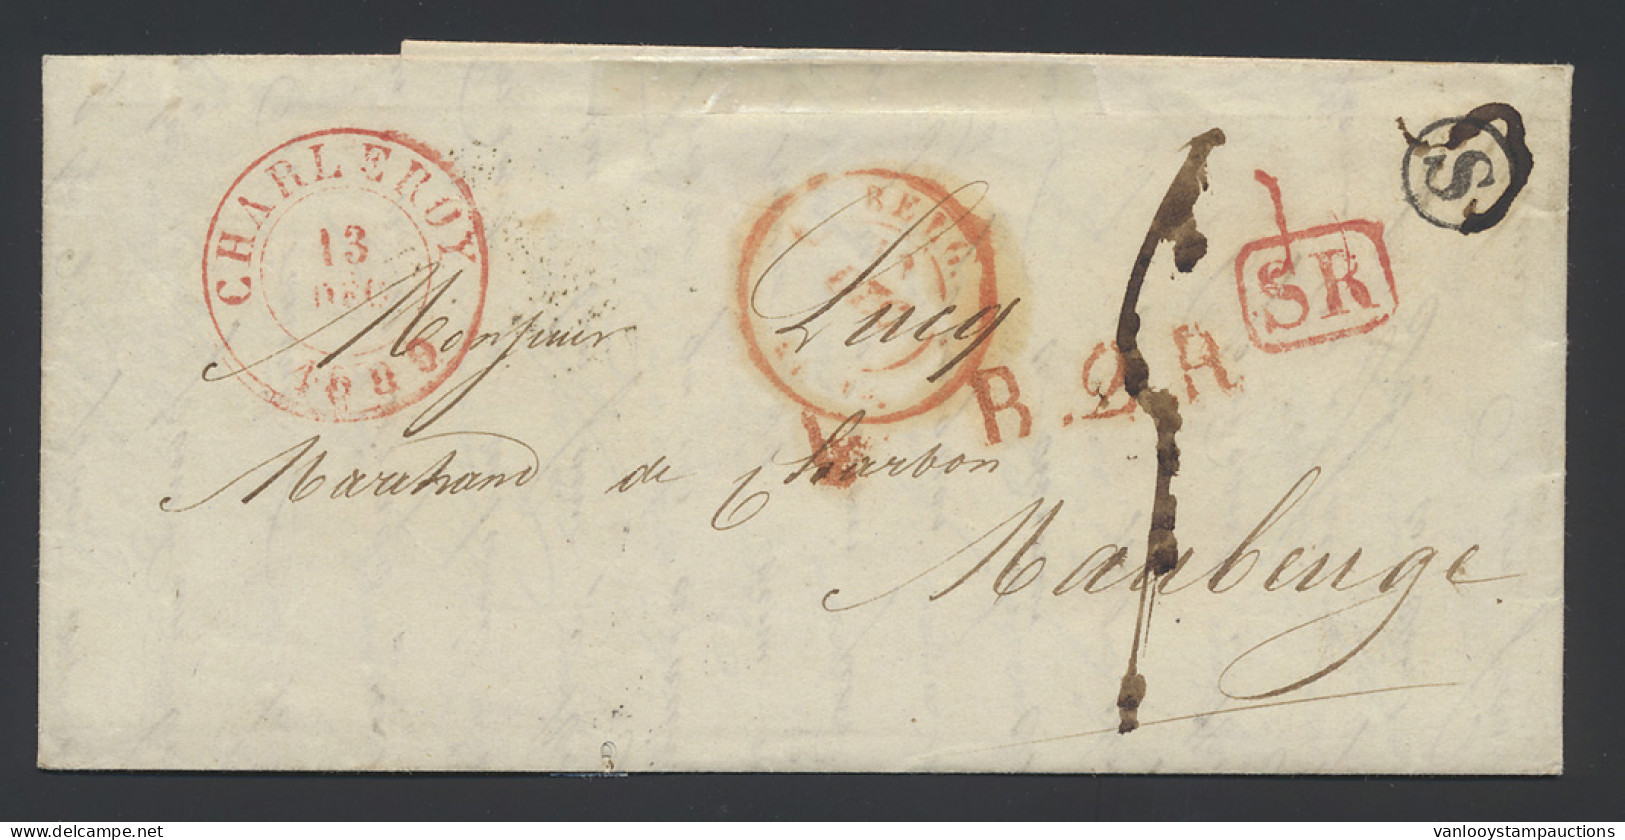 1839 Mooie Brief Met Postbusletter S In Cirkel, Rode SR-stempel, Dubbelcirkelstempel Charleroi 13 Dec 1839 Naar Maubeuge - 1830-1849 (Independent Belgium)